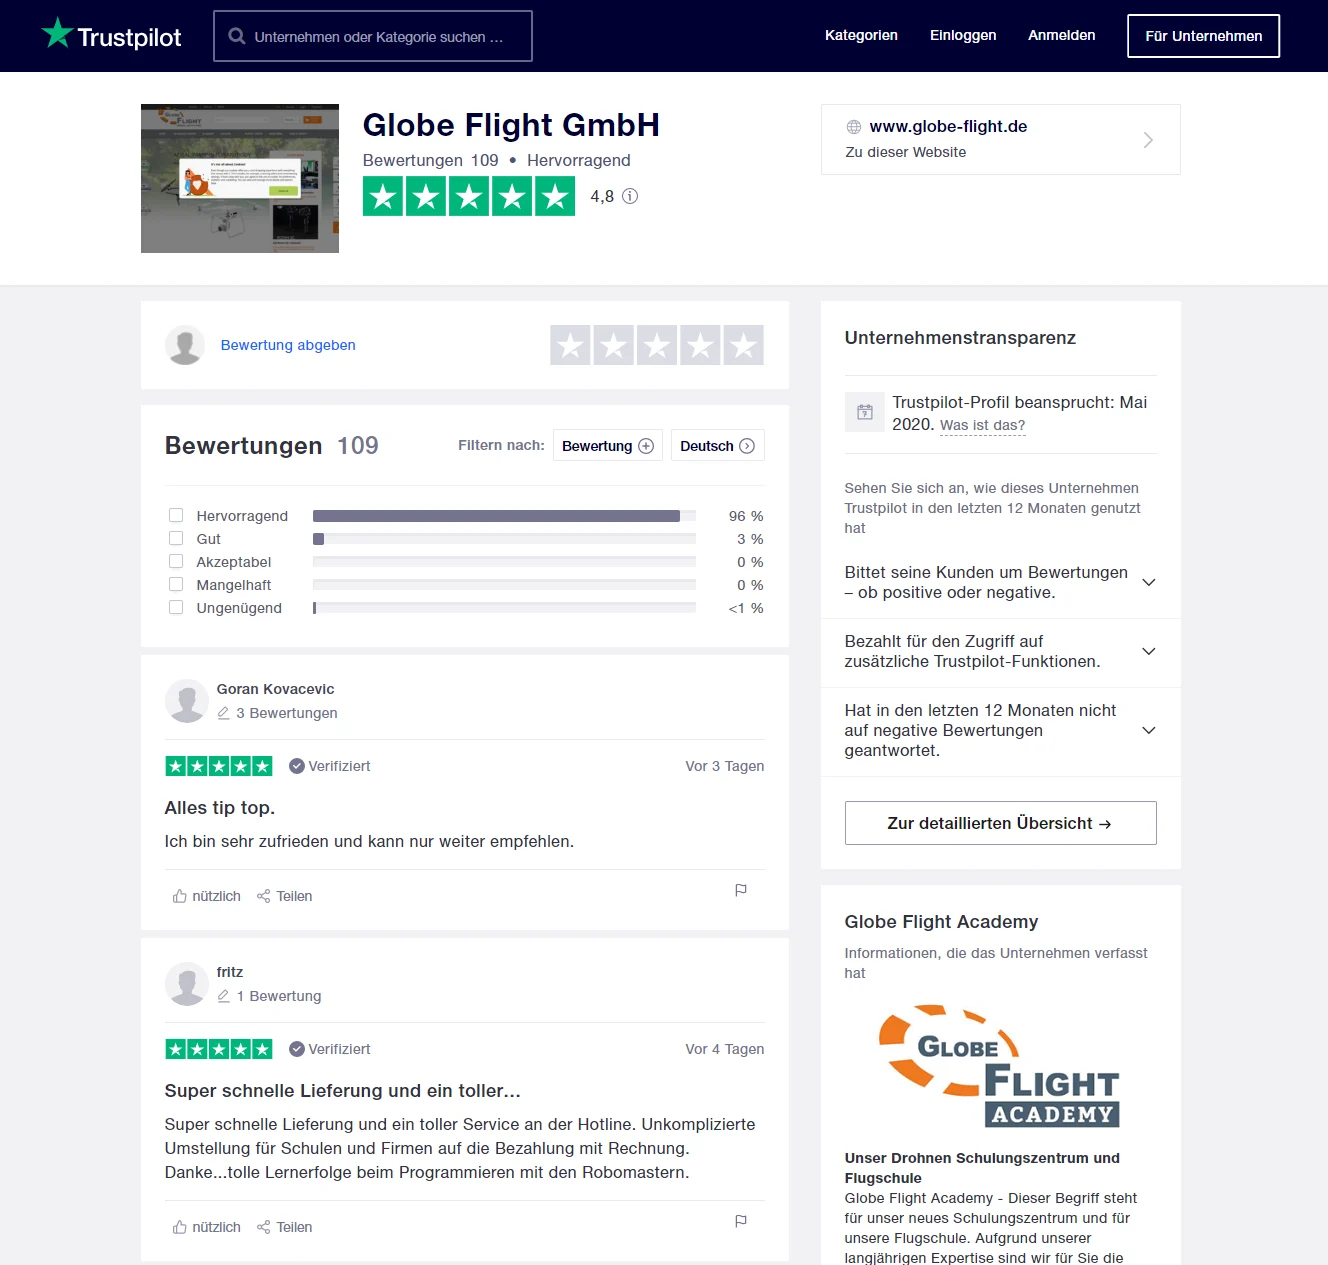 Trustpilot-Profil der Globe Flight GmbH